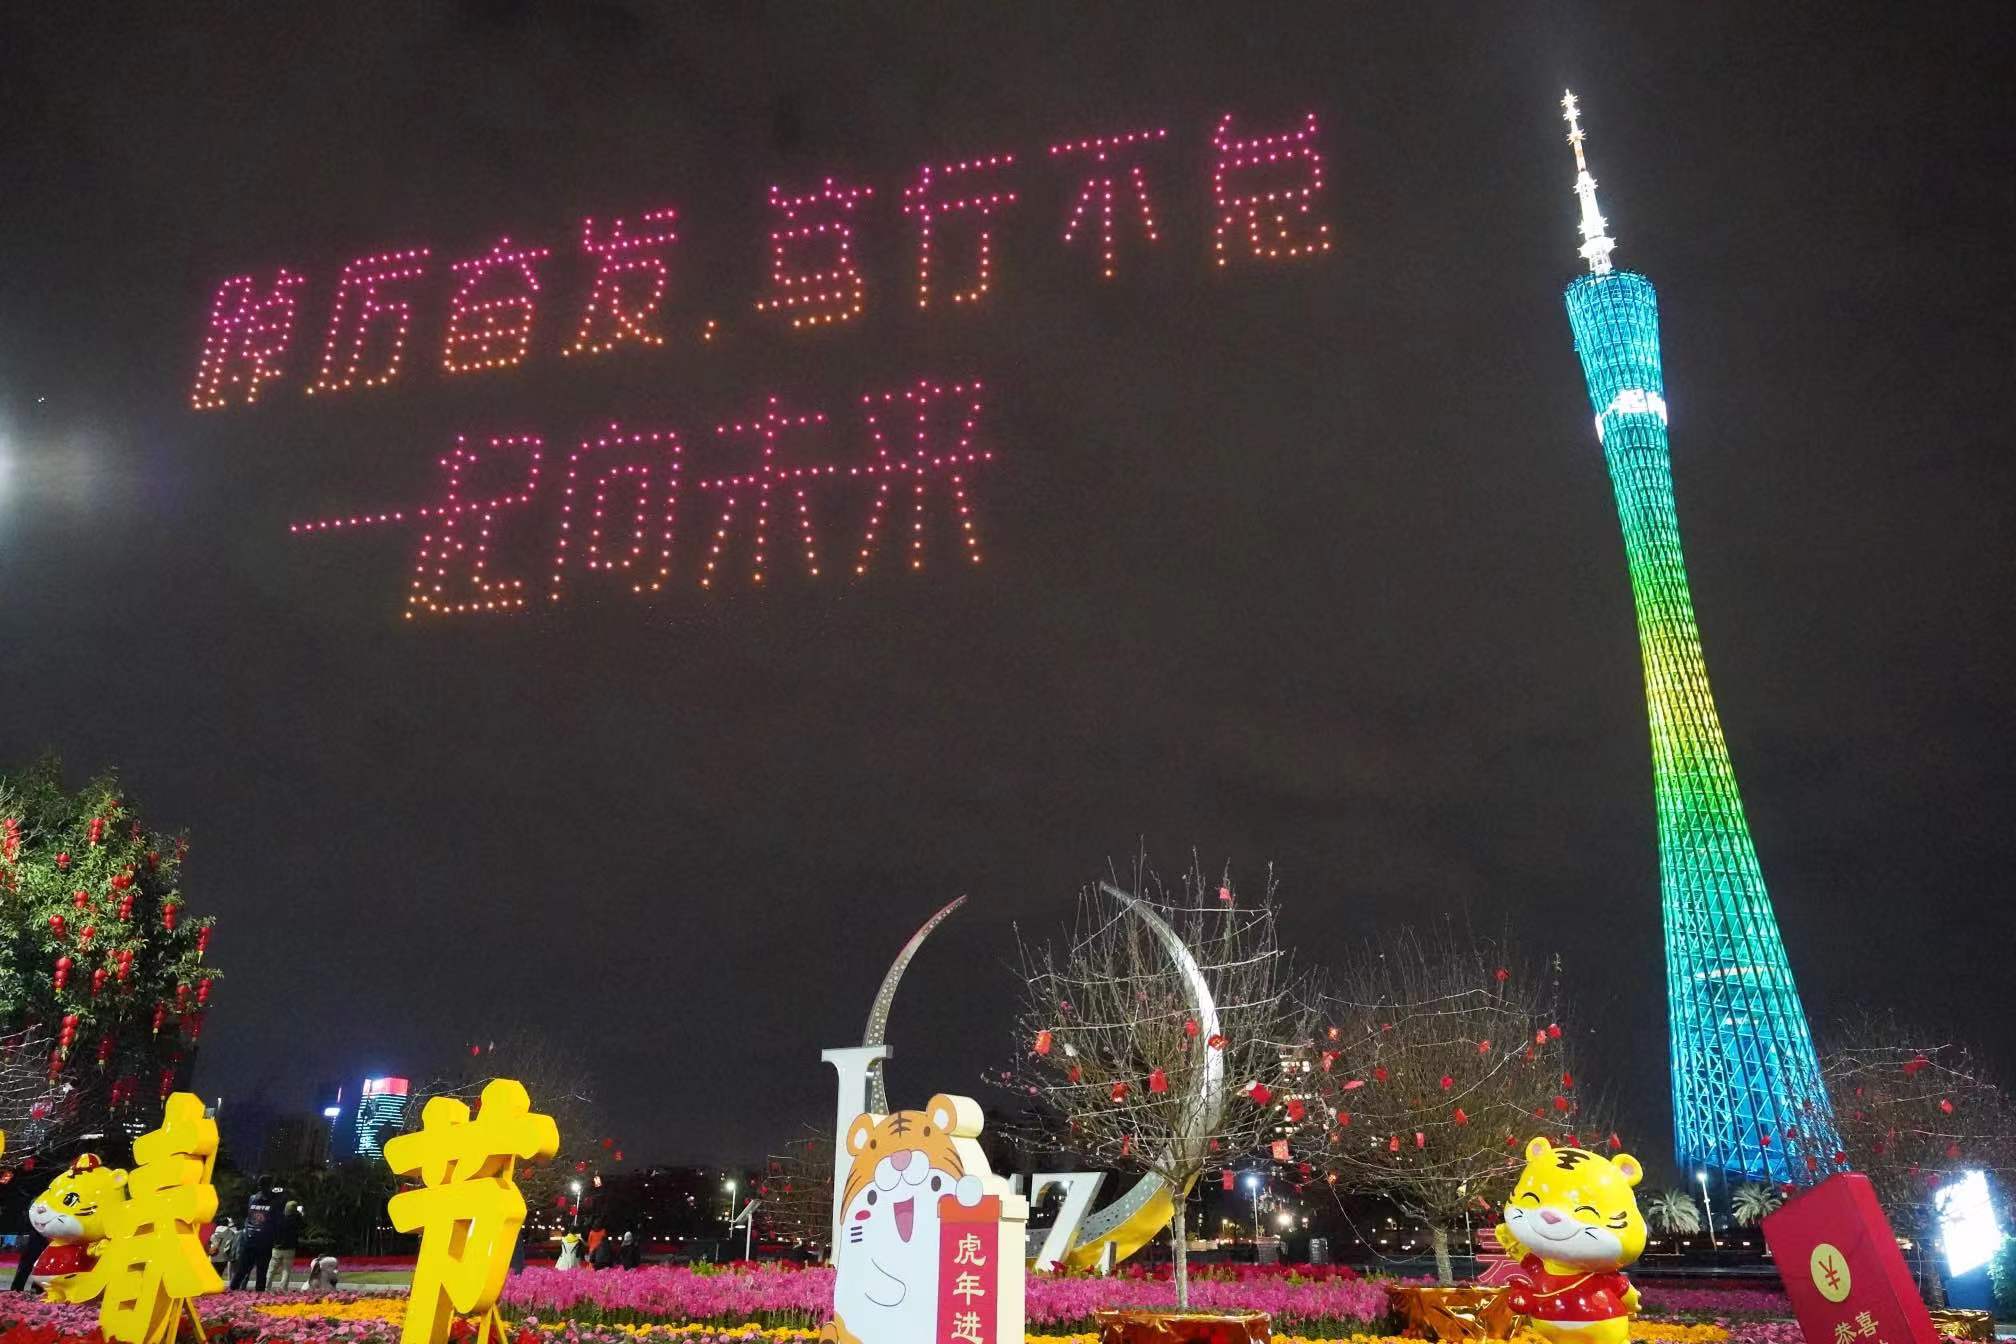 【老广贺春】千架无人机贺新春与冬奥 Thousands of drones celebrate Chinese New Year and Winter Olympics